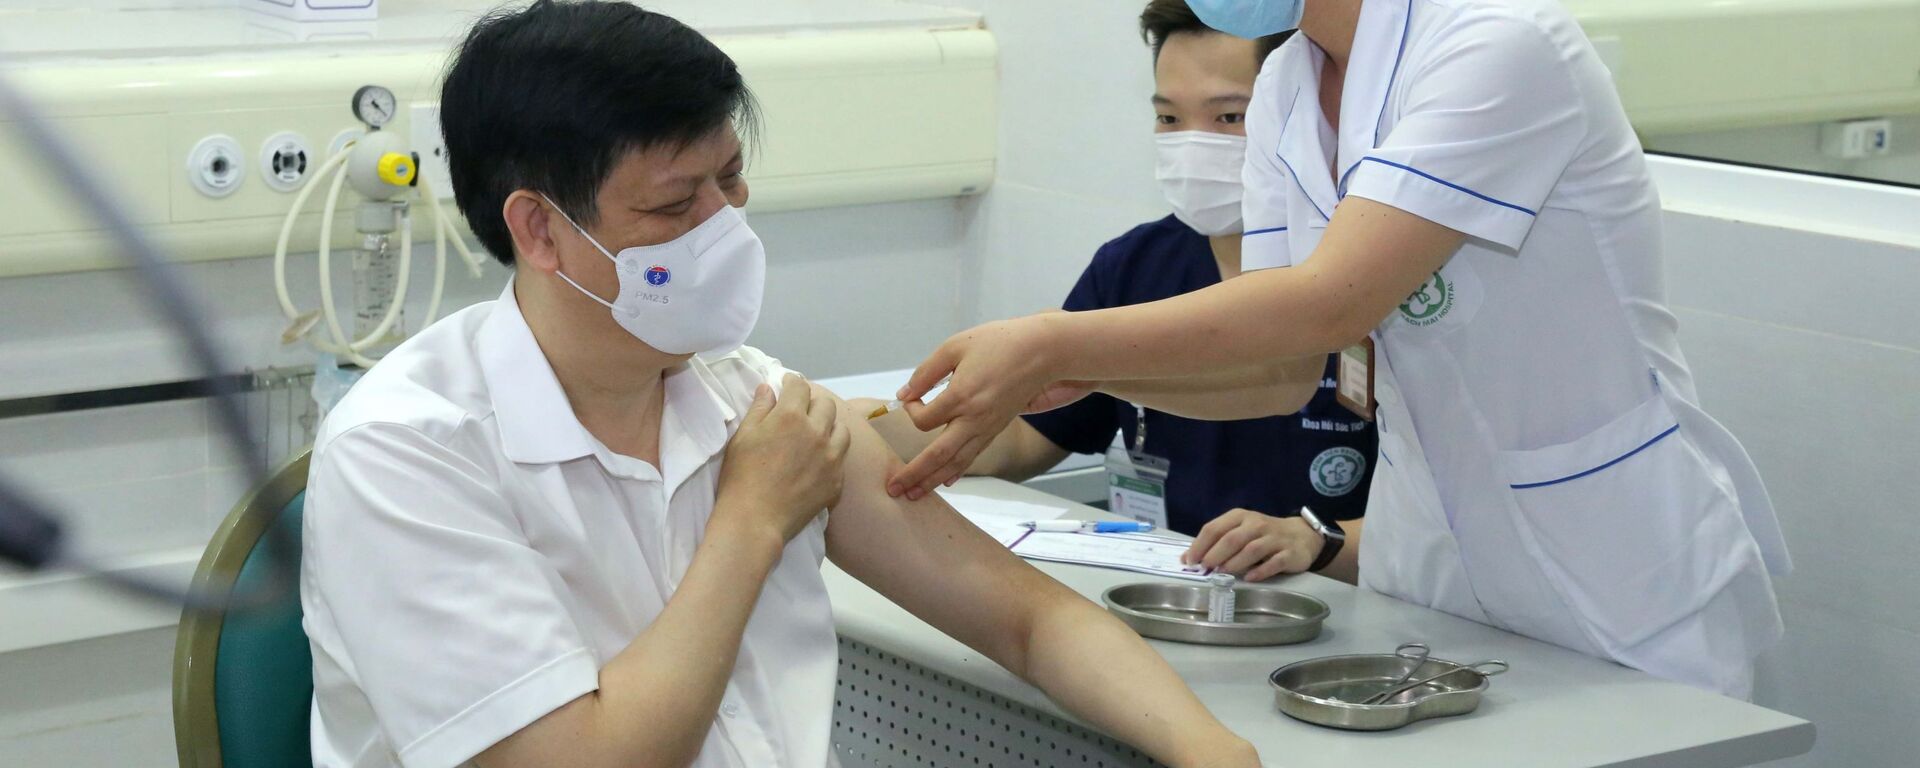 Bộ trưởng Bộ Y tế Nguyễn Thanh Long tiêm vaccine phòng COVID-19 - Sputnik Việt Nam, 1920, 06.05.2021